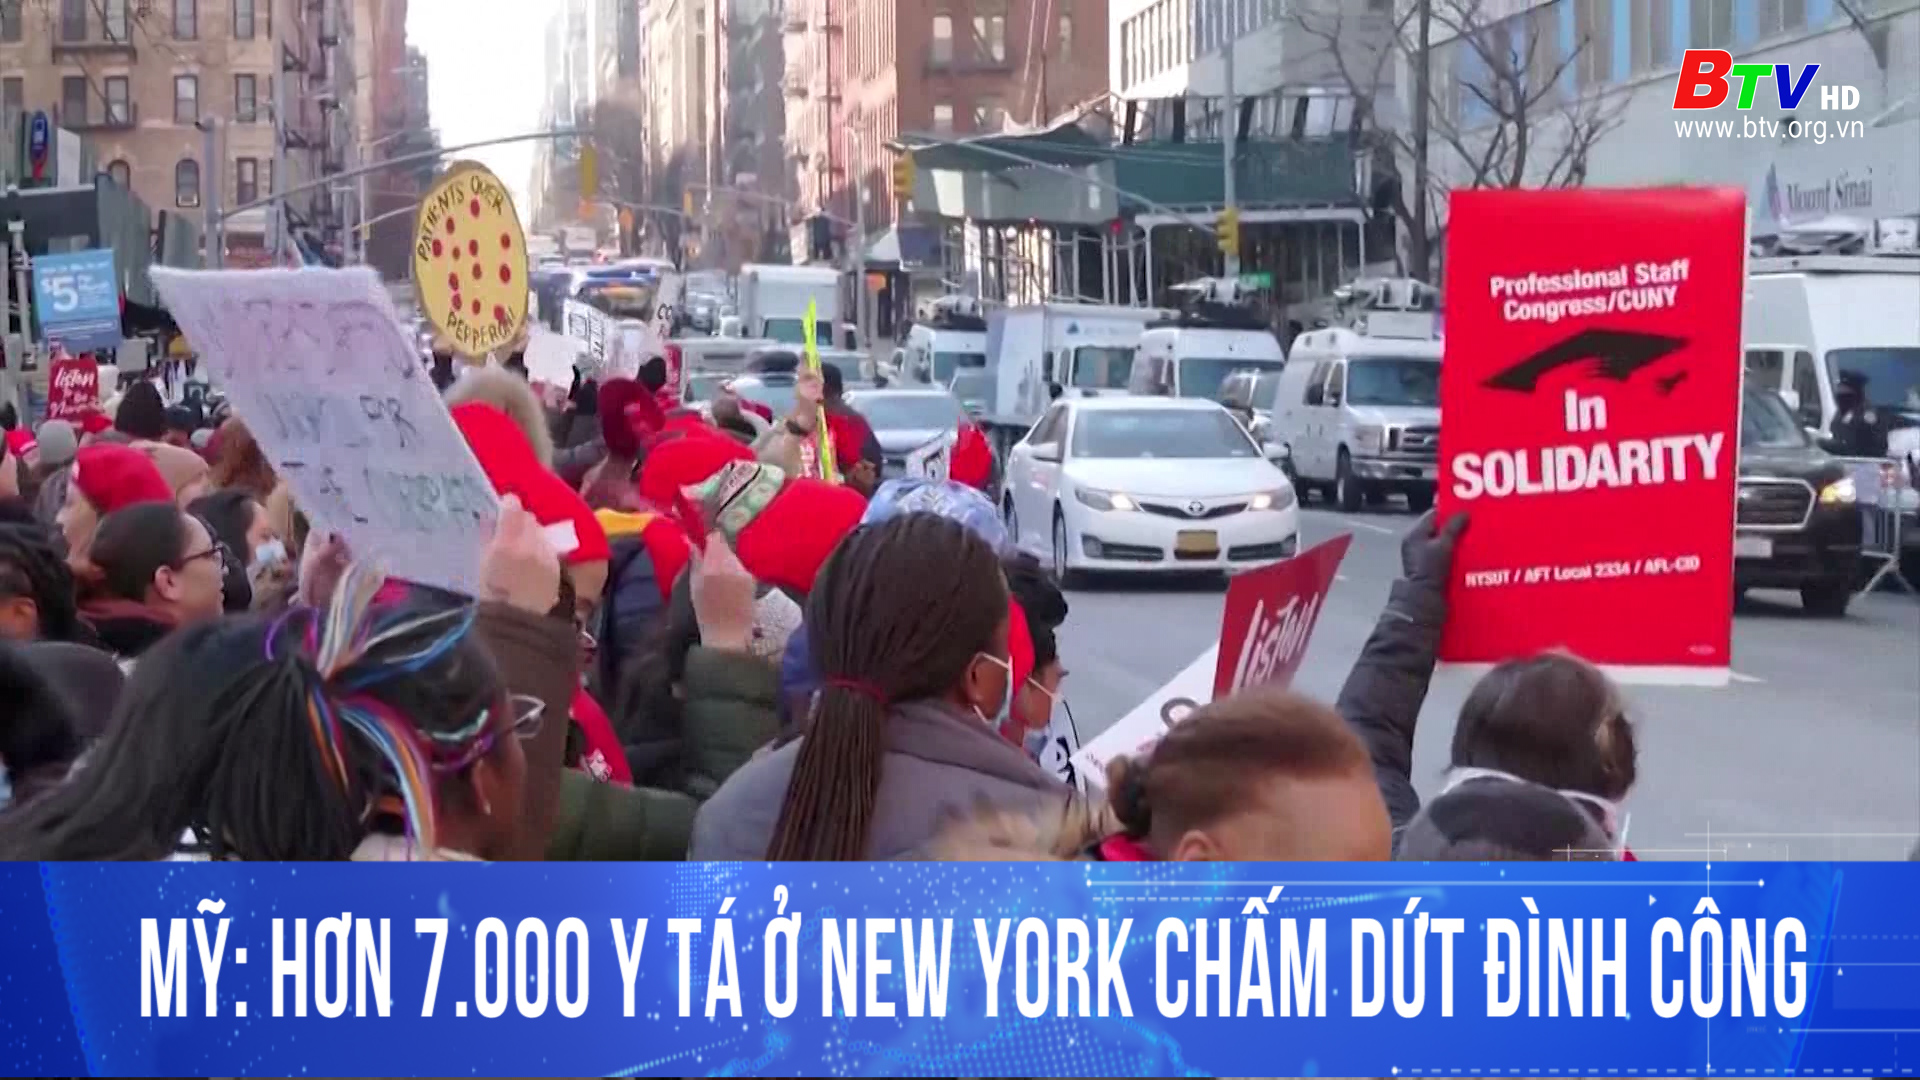 Mỹ: hơn 7.000 y tá ở New York chấm dứt đình công